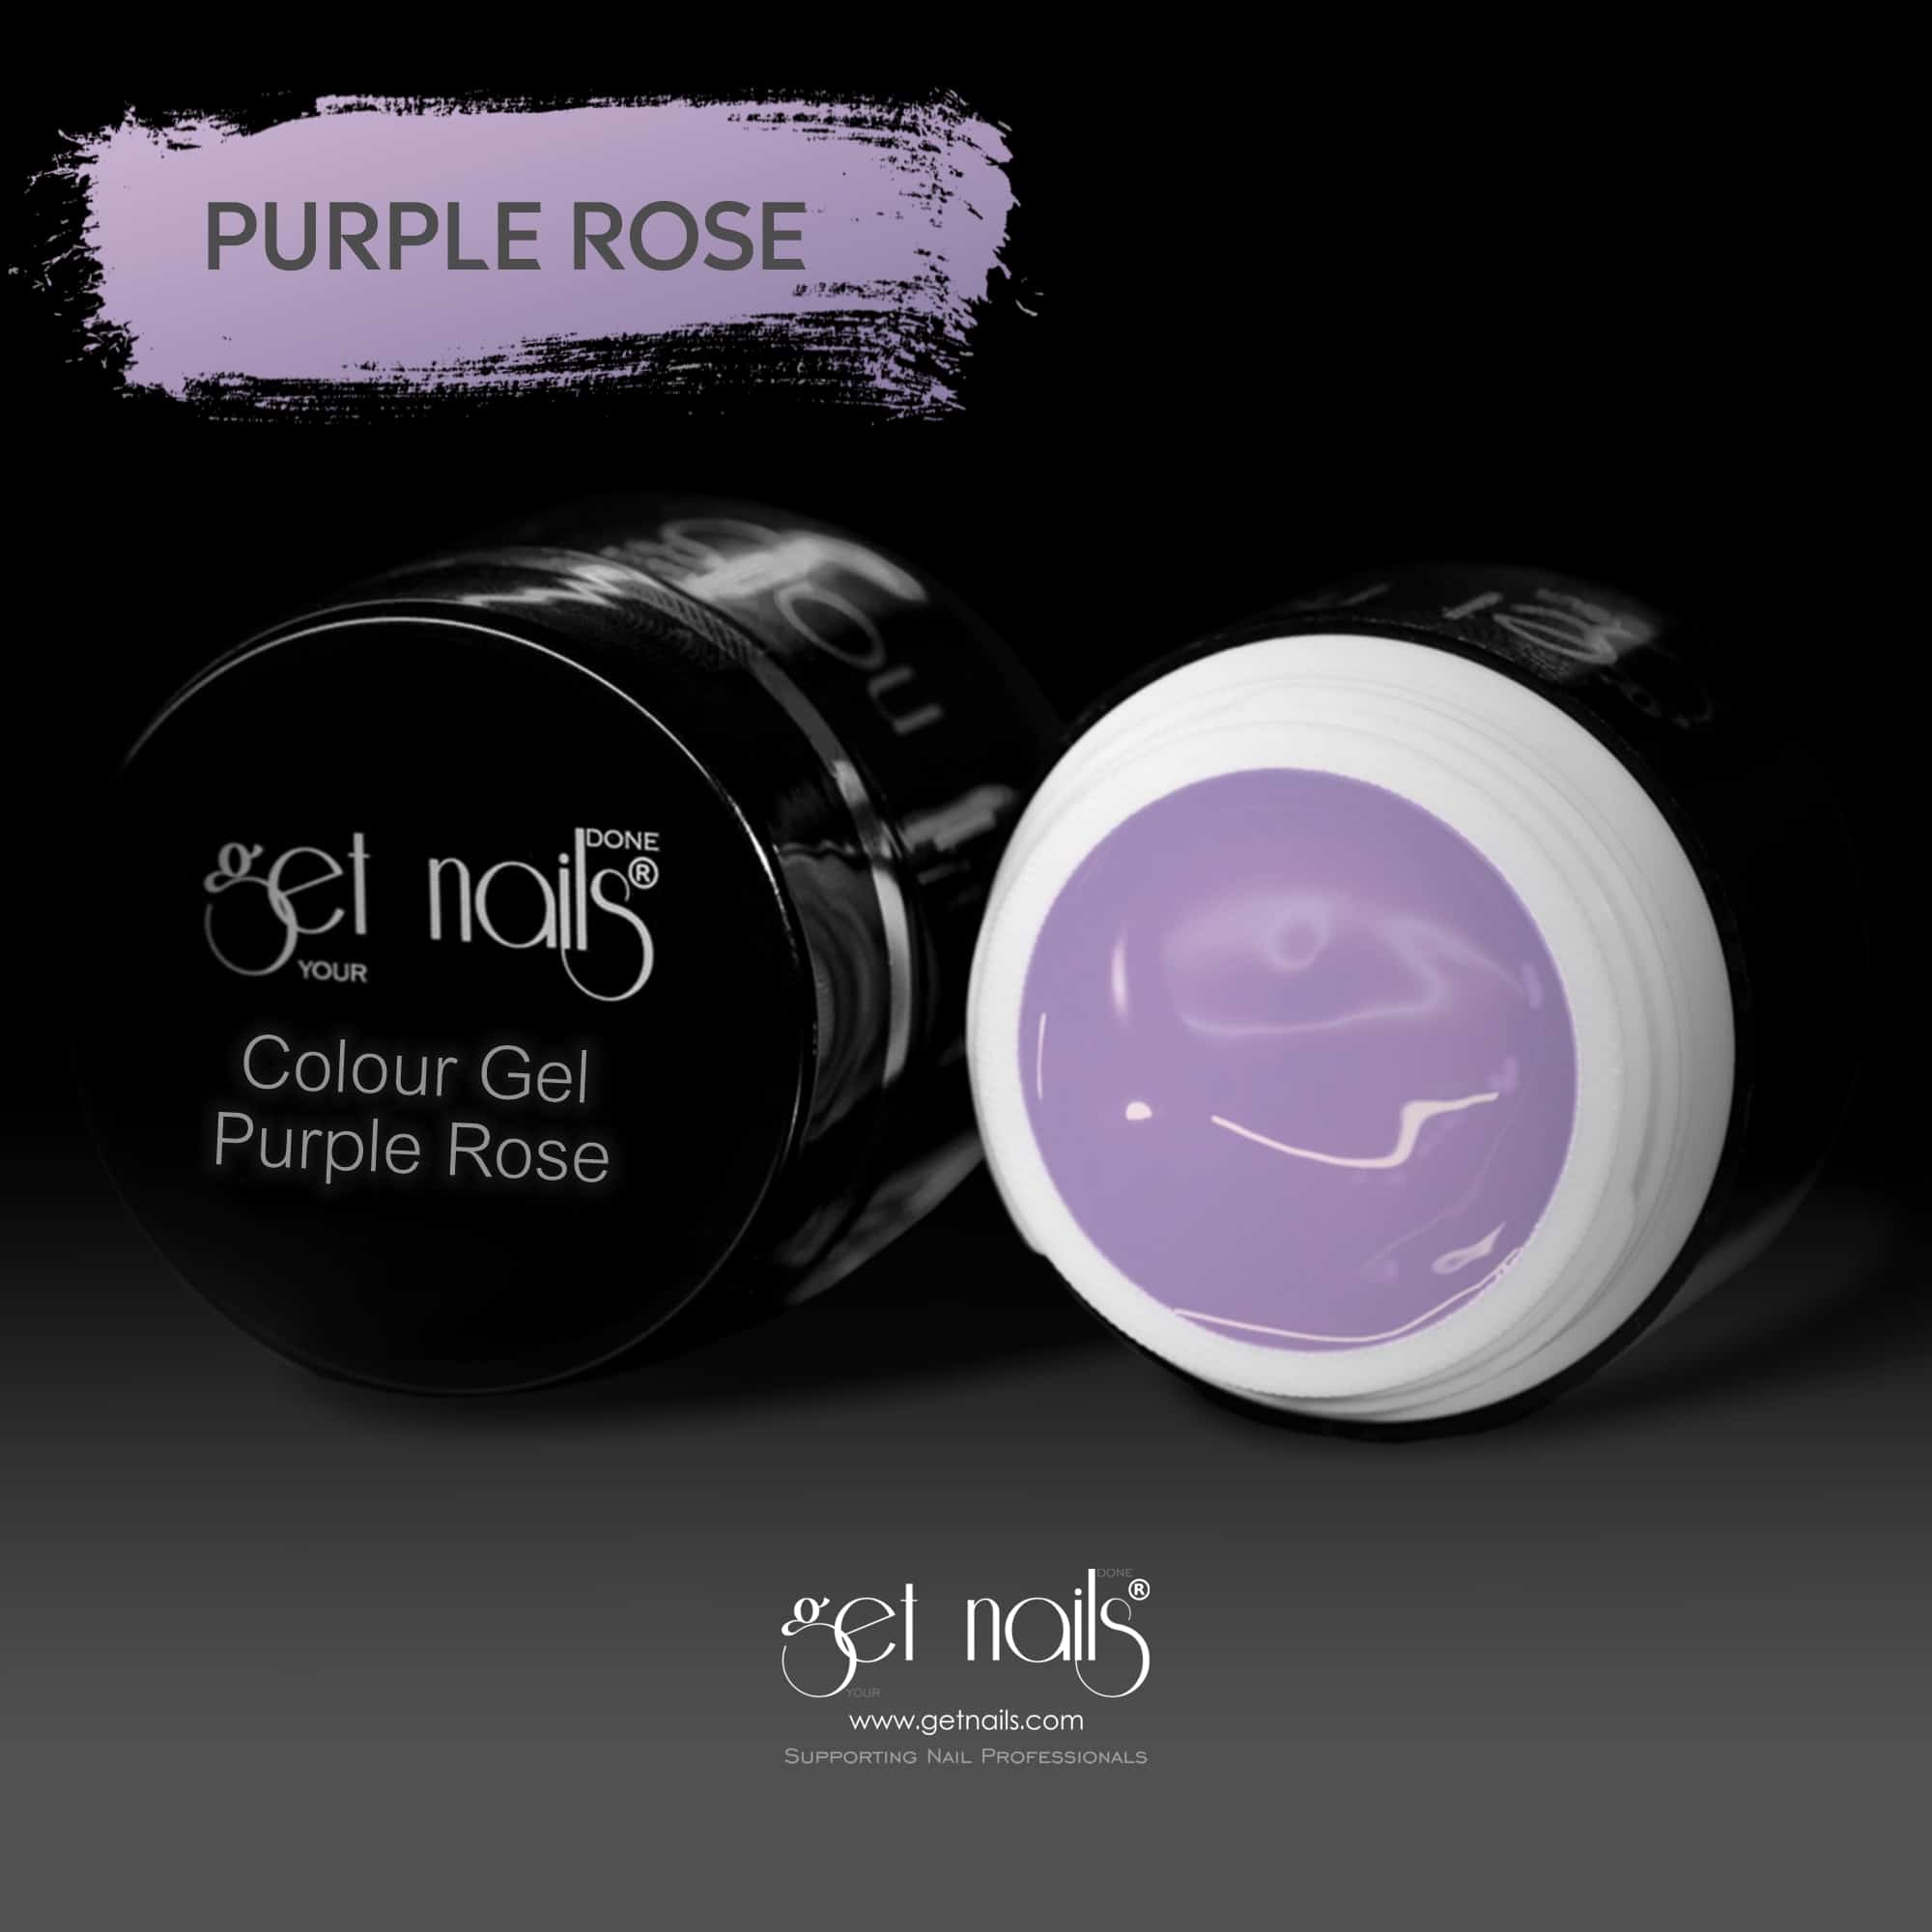 Get Nails Austria - Colour Gel Purple Rose 5g